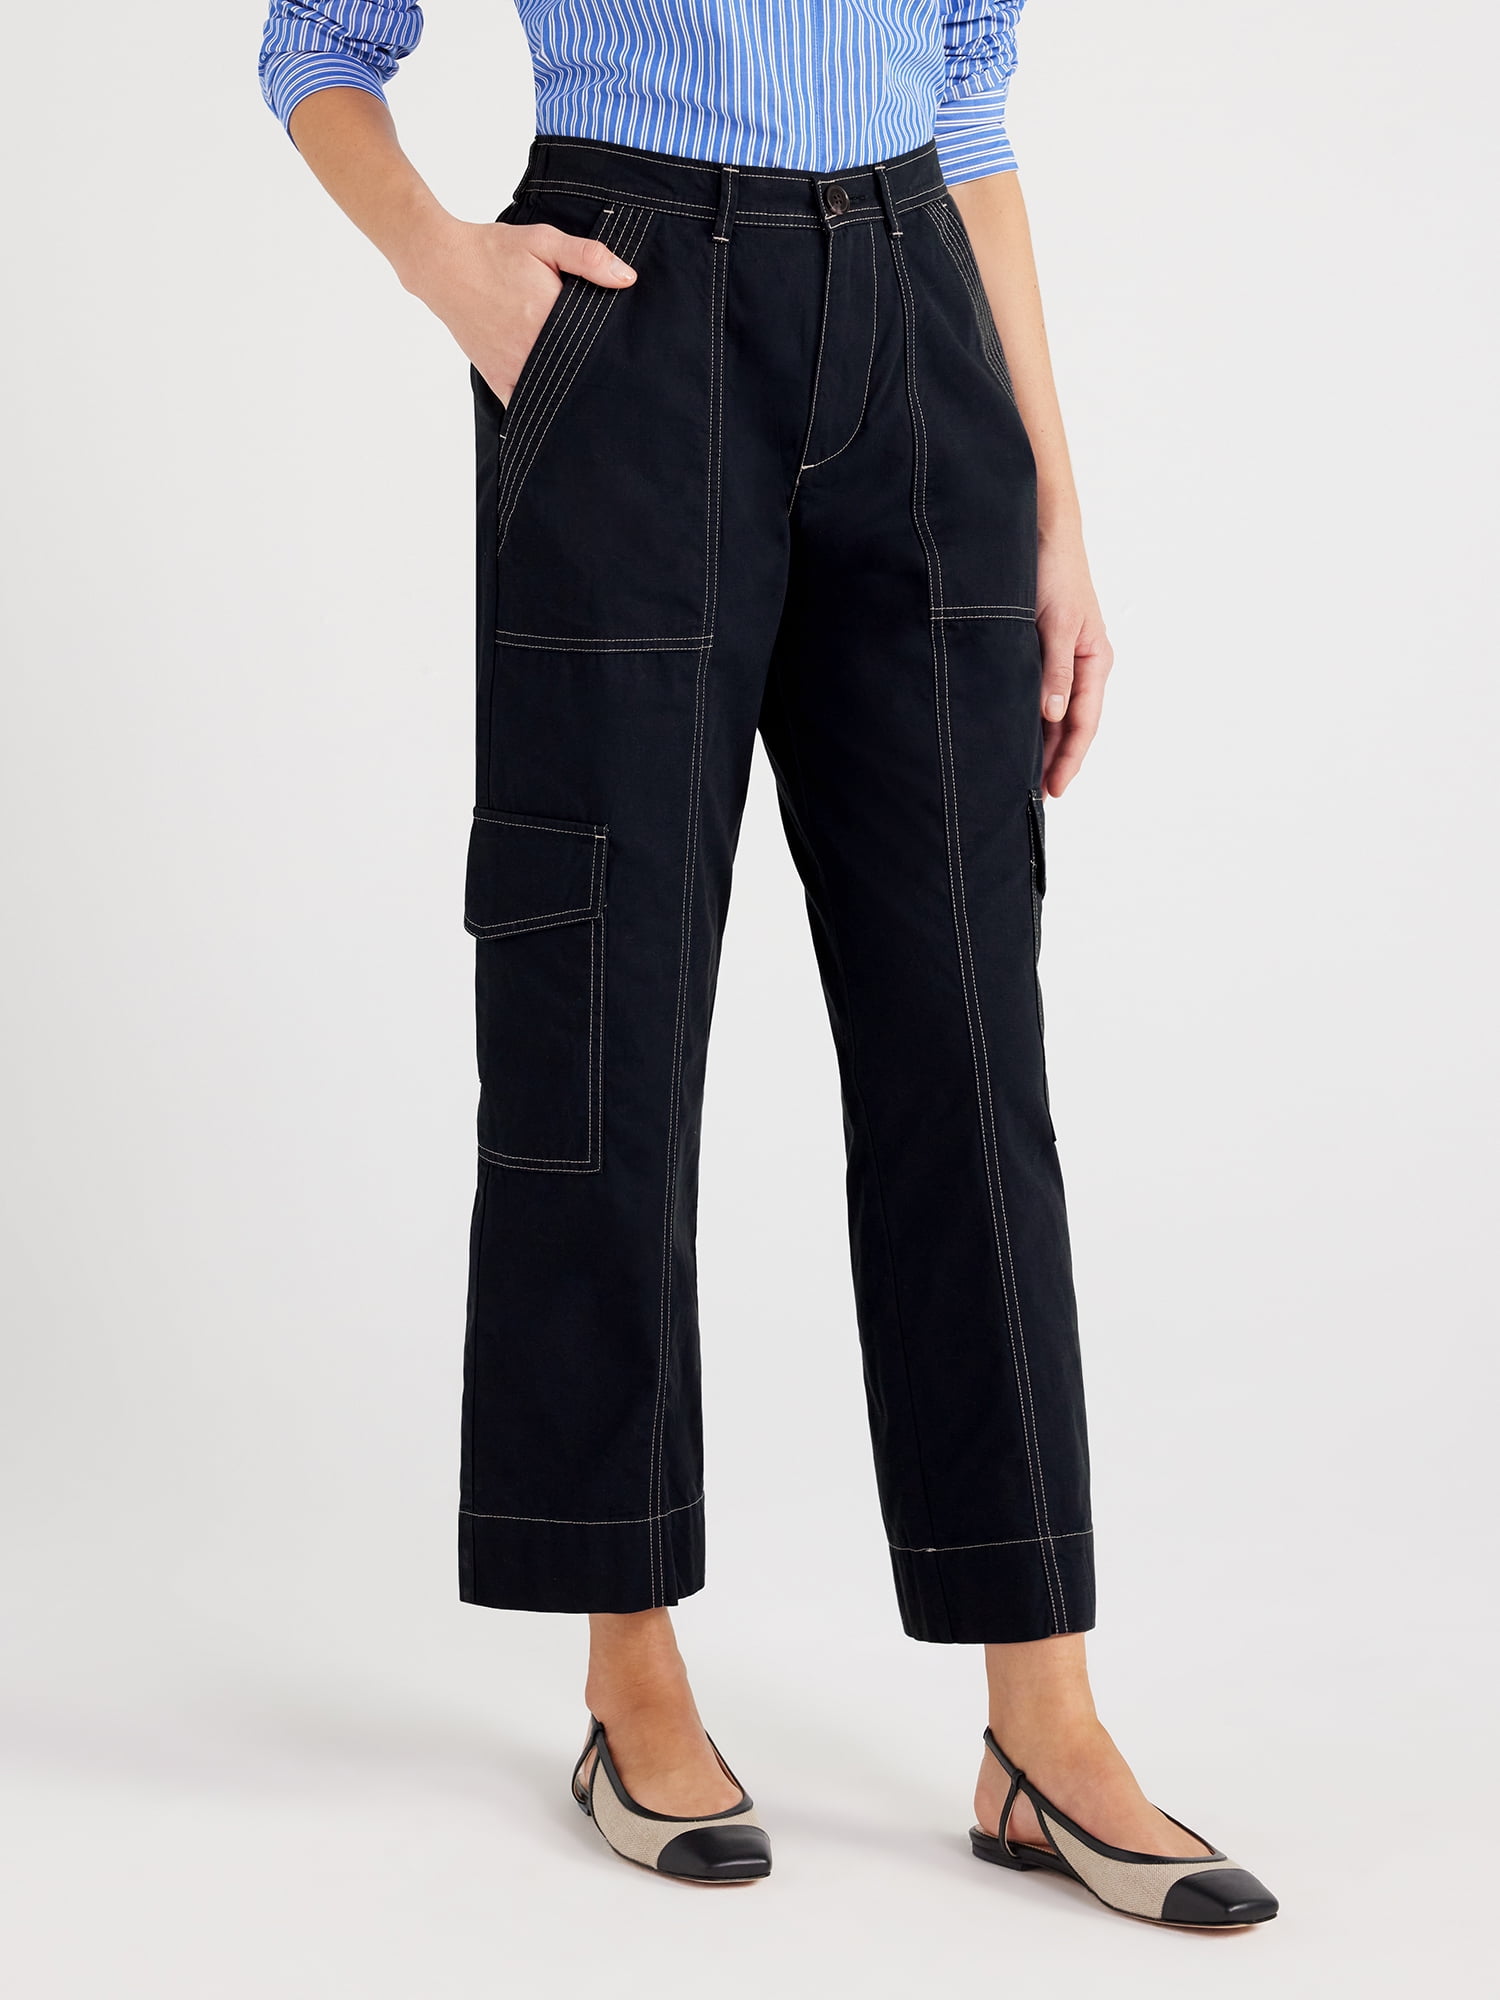 Free Assembly Women’s Cargo Pants, 27” Inseam, Sizes XS-XXXL